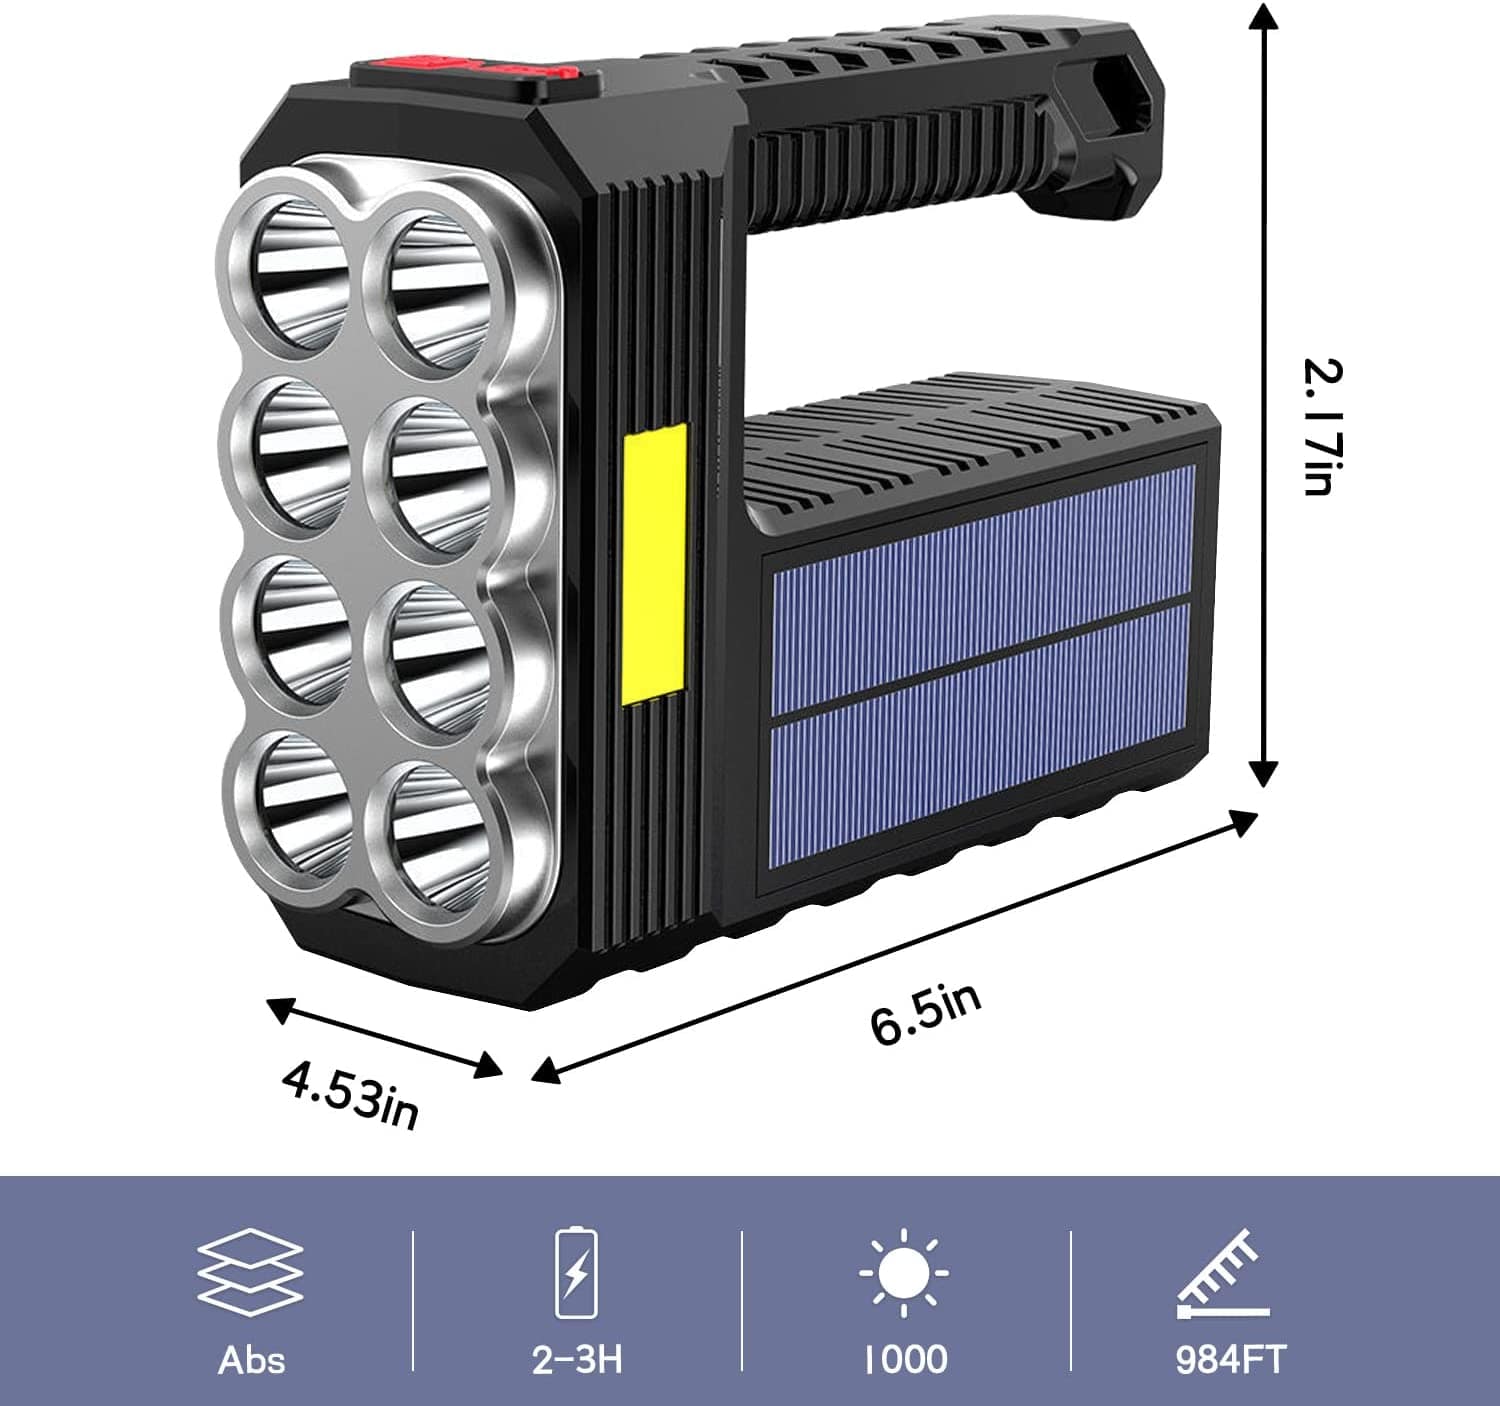 SmartTechShopping light 8 LED Rechargeable Handheld Solar Flashlight